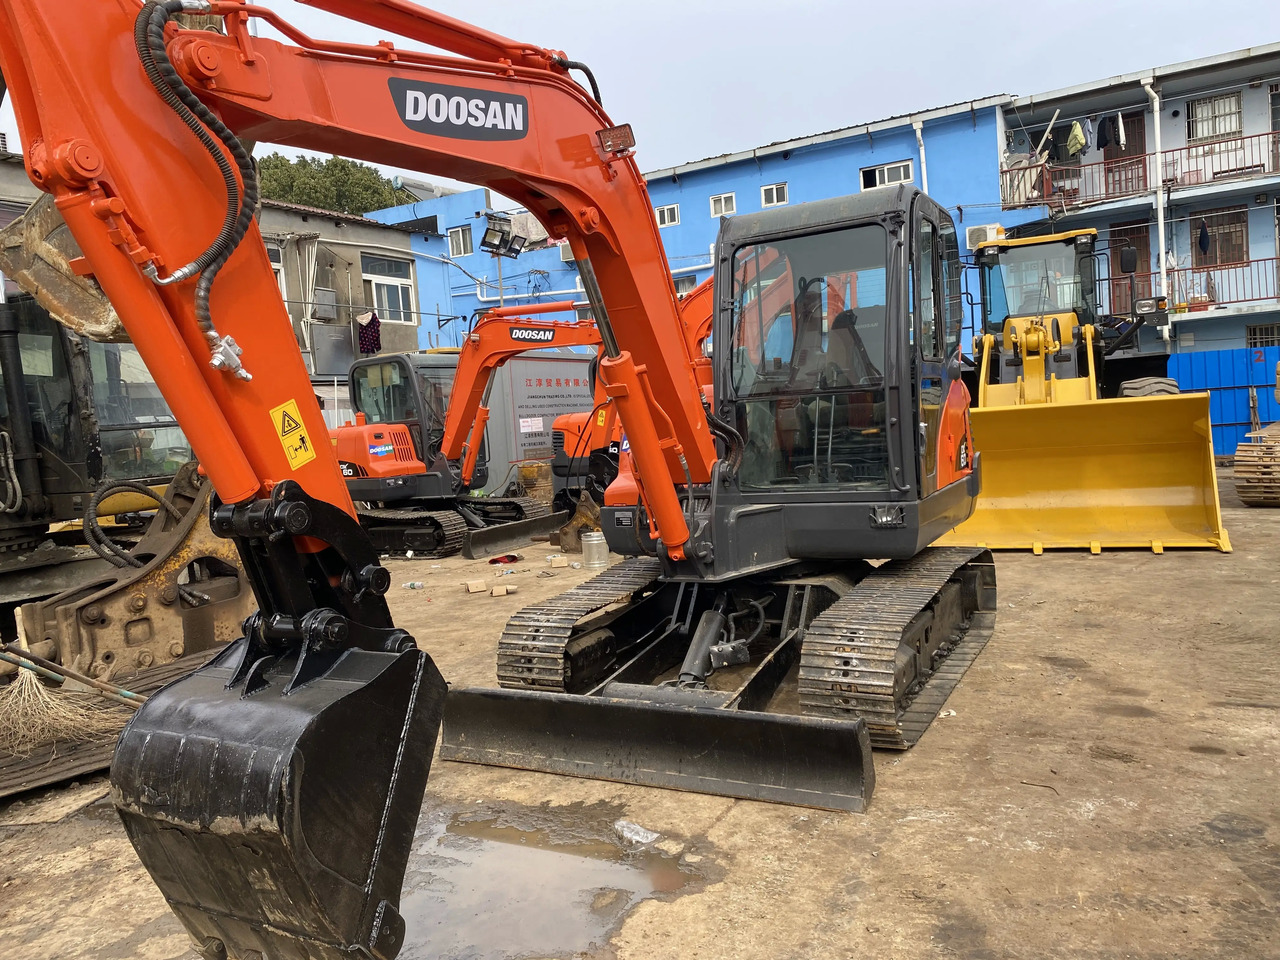 크롤러 굴삭기 Original 6ton Doosan Dx60 used Hydraulic Crawler mini Excavator Doosan DX60 Excavator in Stock : 사진 3